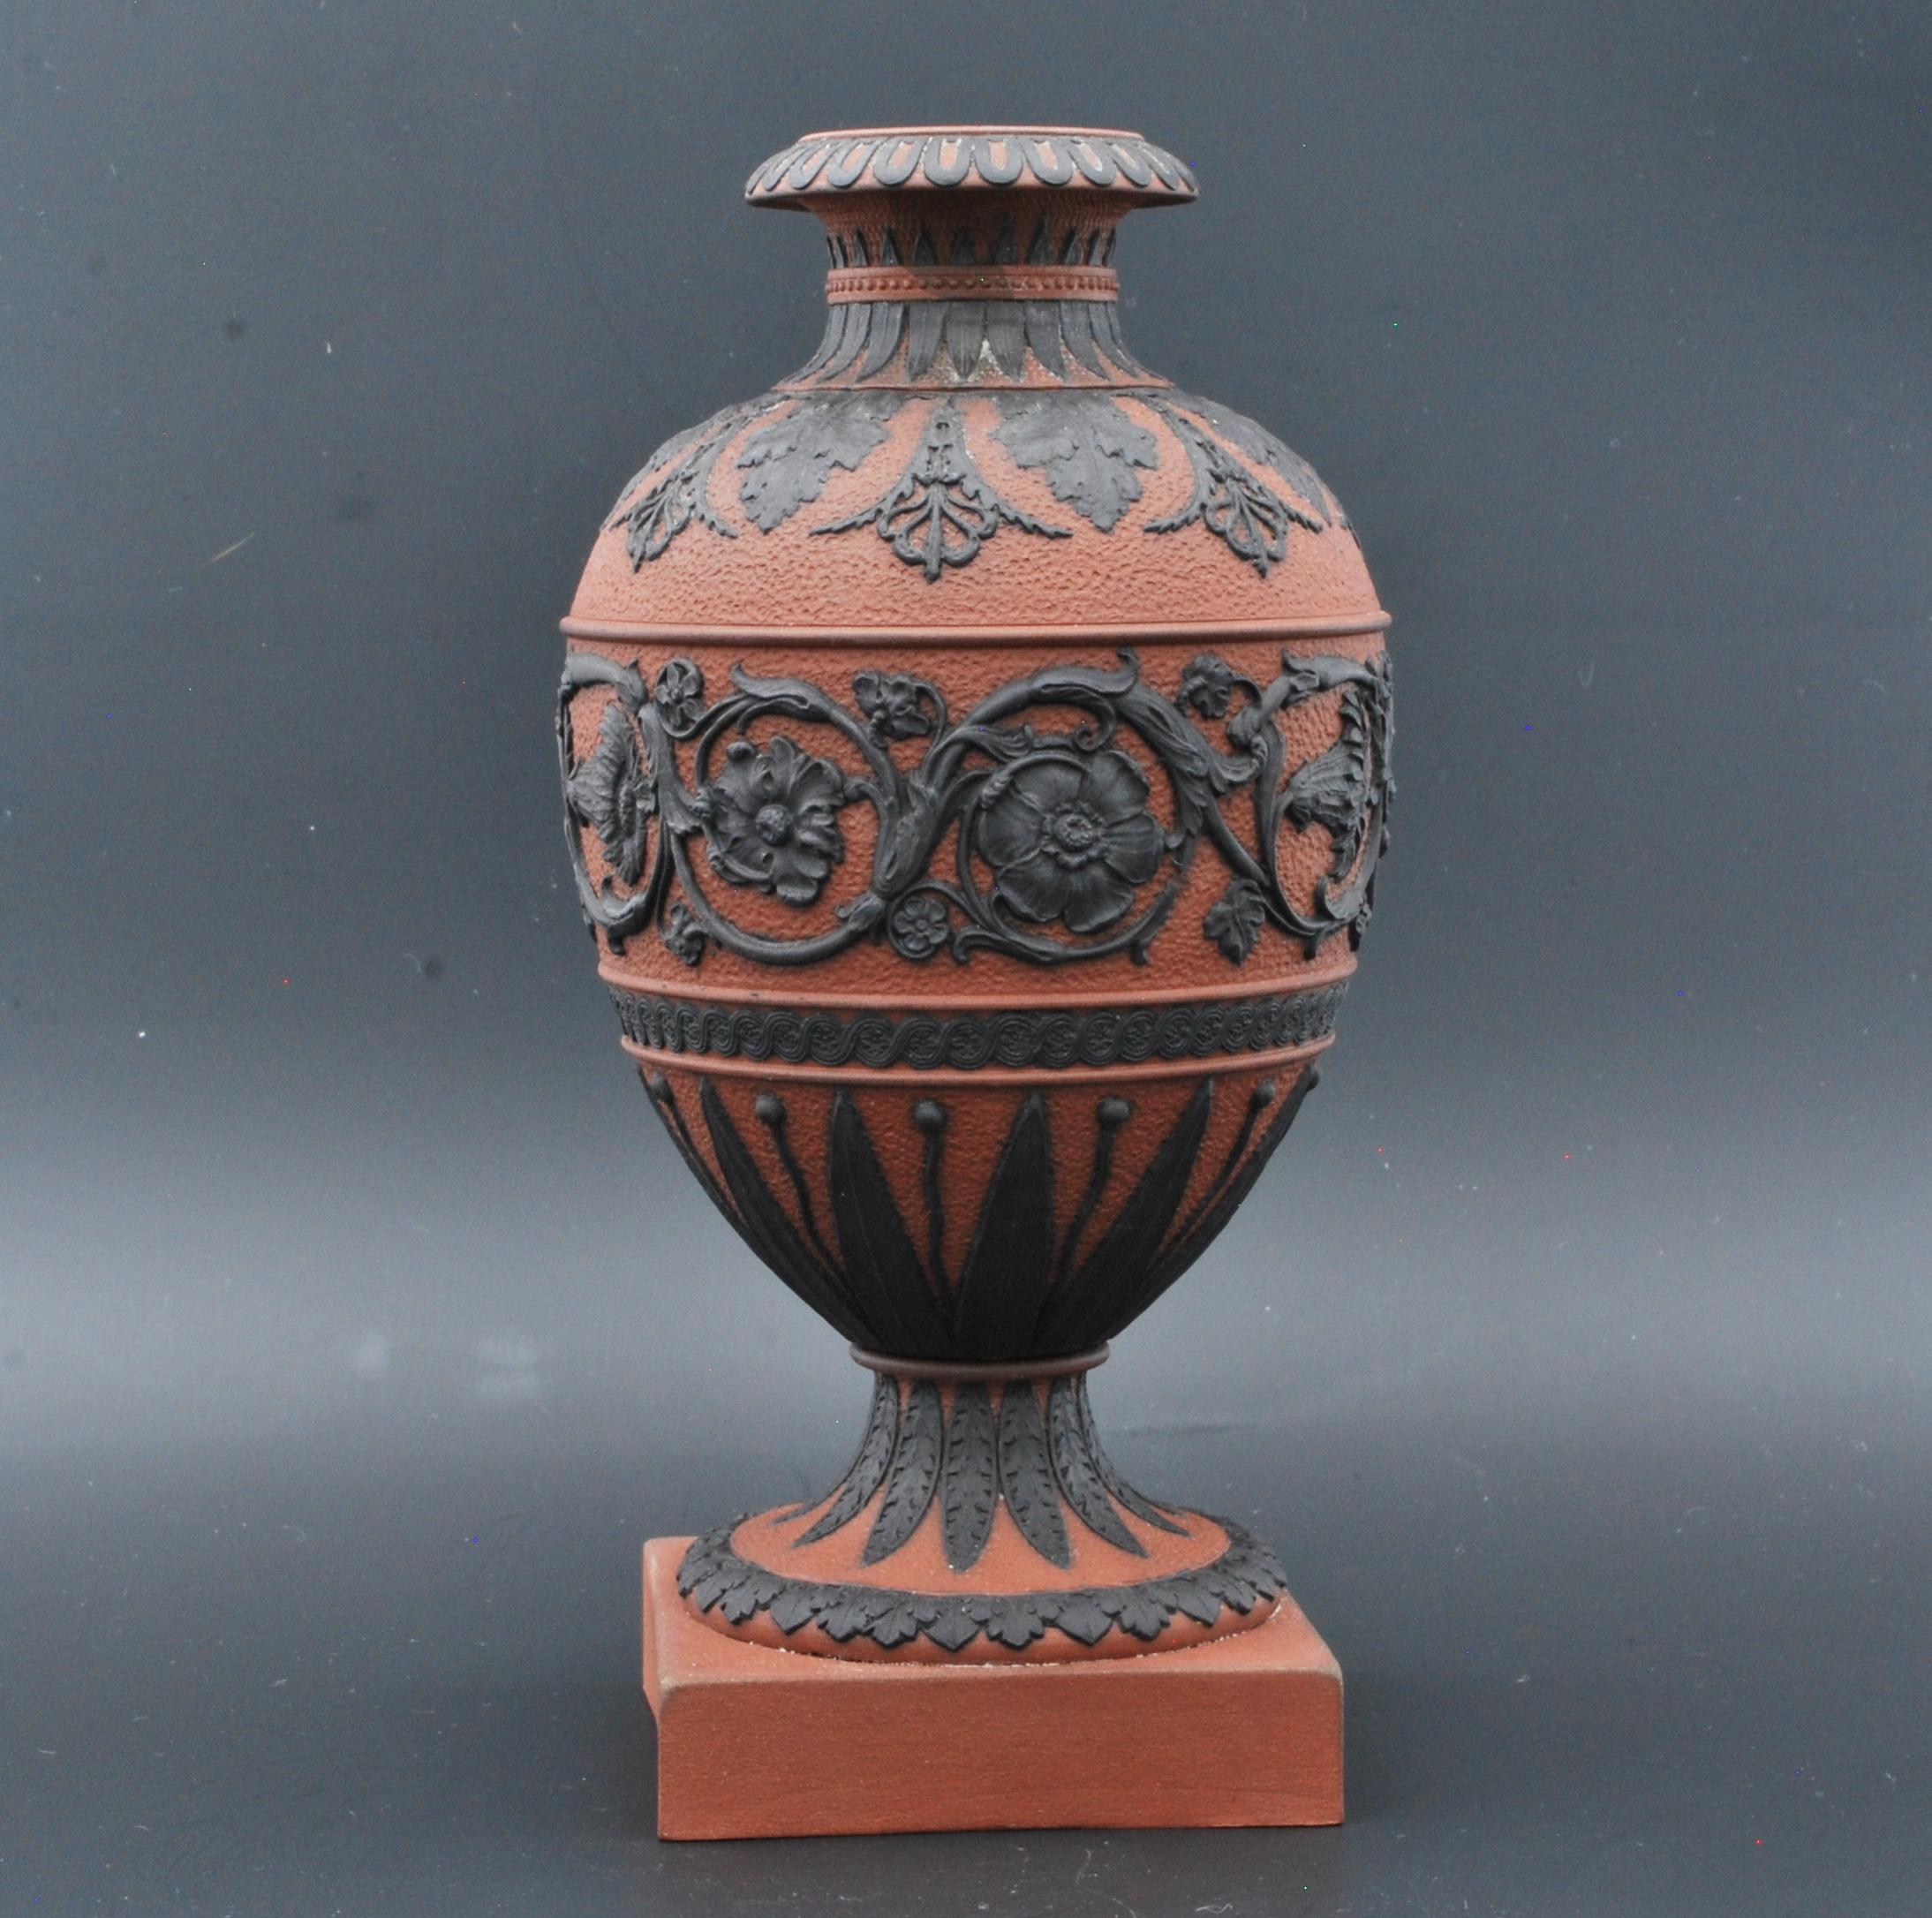 Un très beau vase en Rosso Antico, décoré en basalte noir avec des arabesques sur un fond à fossettes. La couleur du Rosso ancien est très différente de celle du corps orange du XIXe siècle.